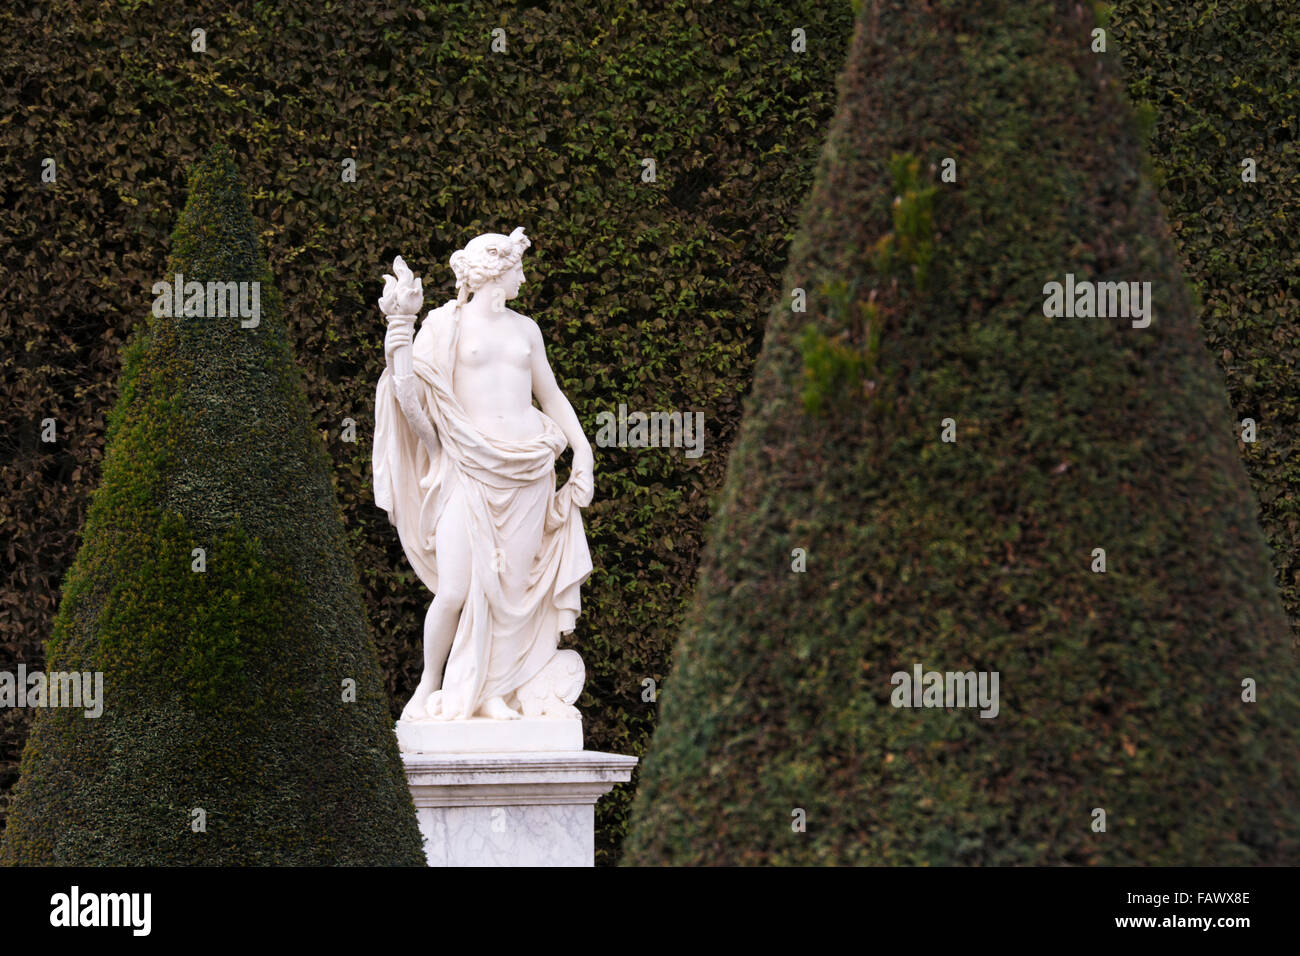 Une statue en marbre blanc est illustré contre le vert d'une haute haie dans les jardins de Versailles, Paris, France Banque D'Images